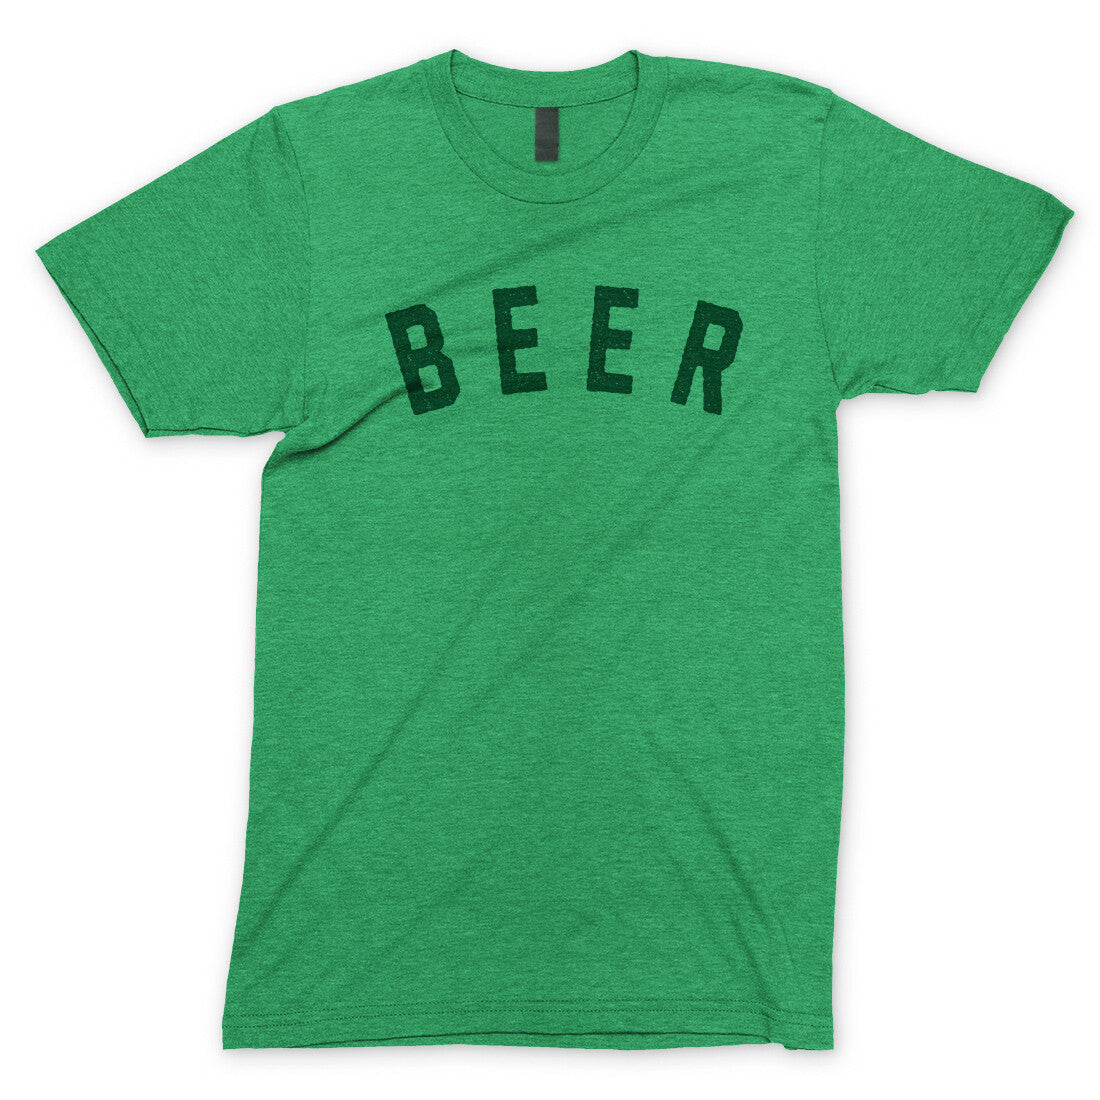 Beer in Heather Irish Green Color